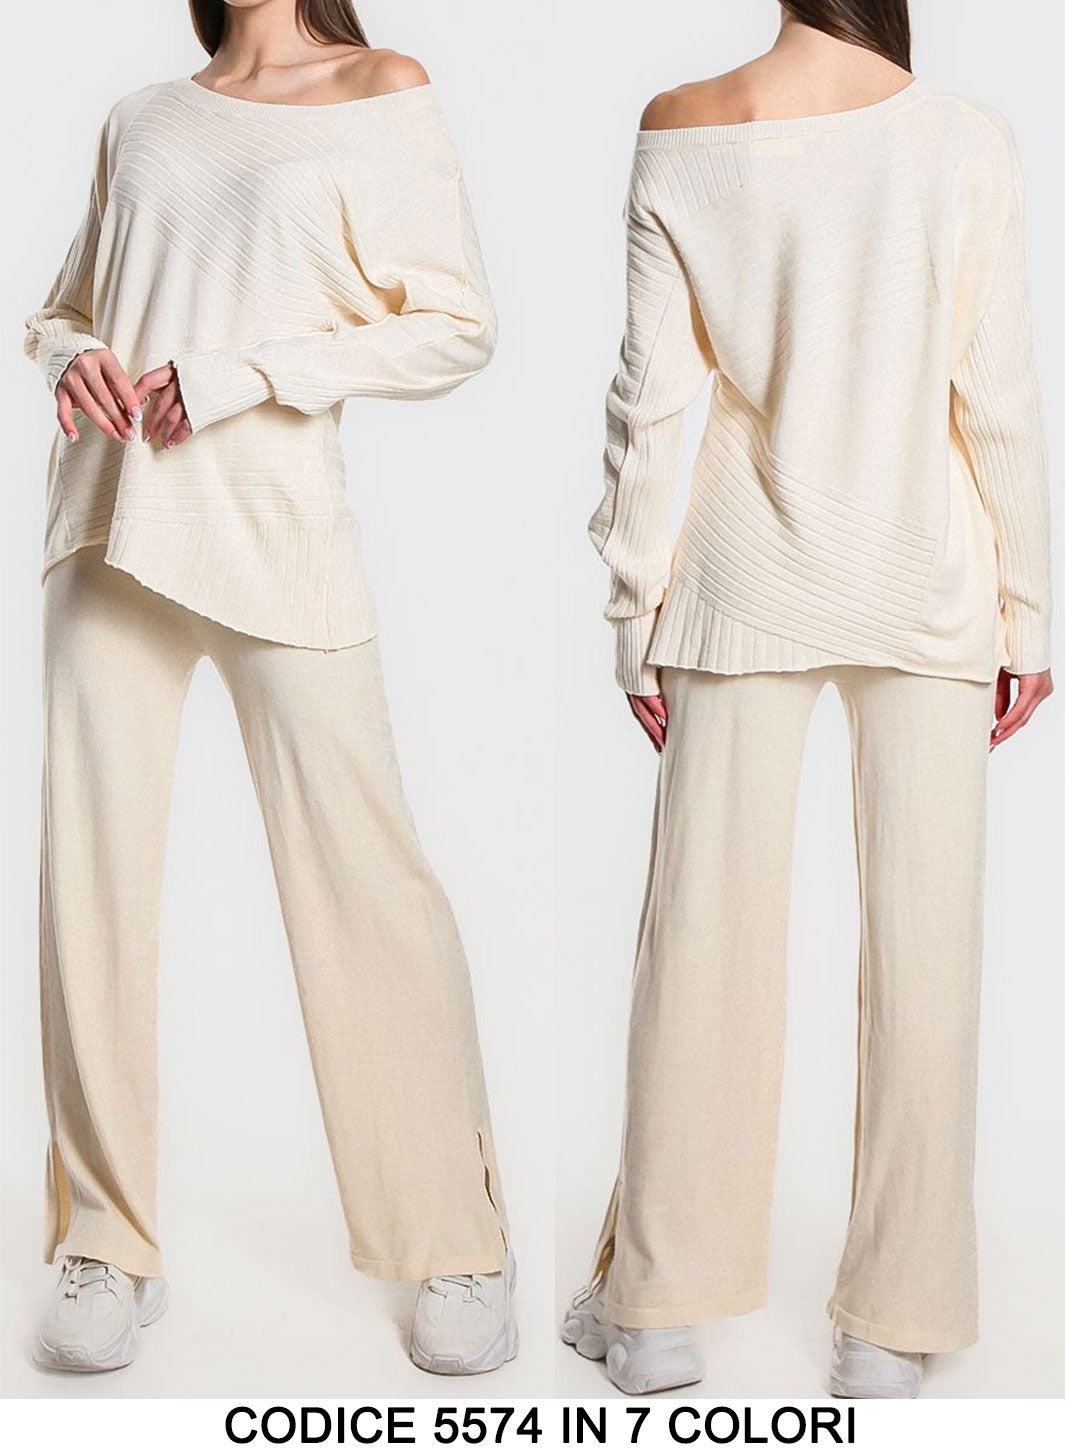 Completo Coordinato Elegante Lana Rasata Righe Oblique Maglia Manica Lunga Pantalone Laccetti in 7 Colori - 5574